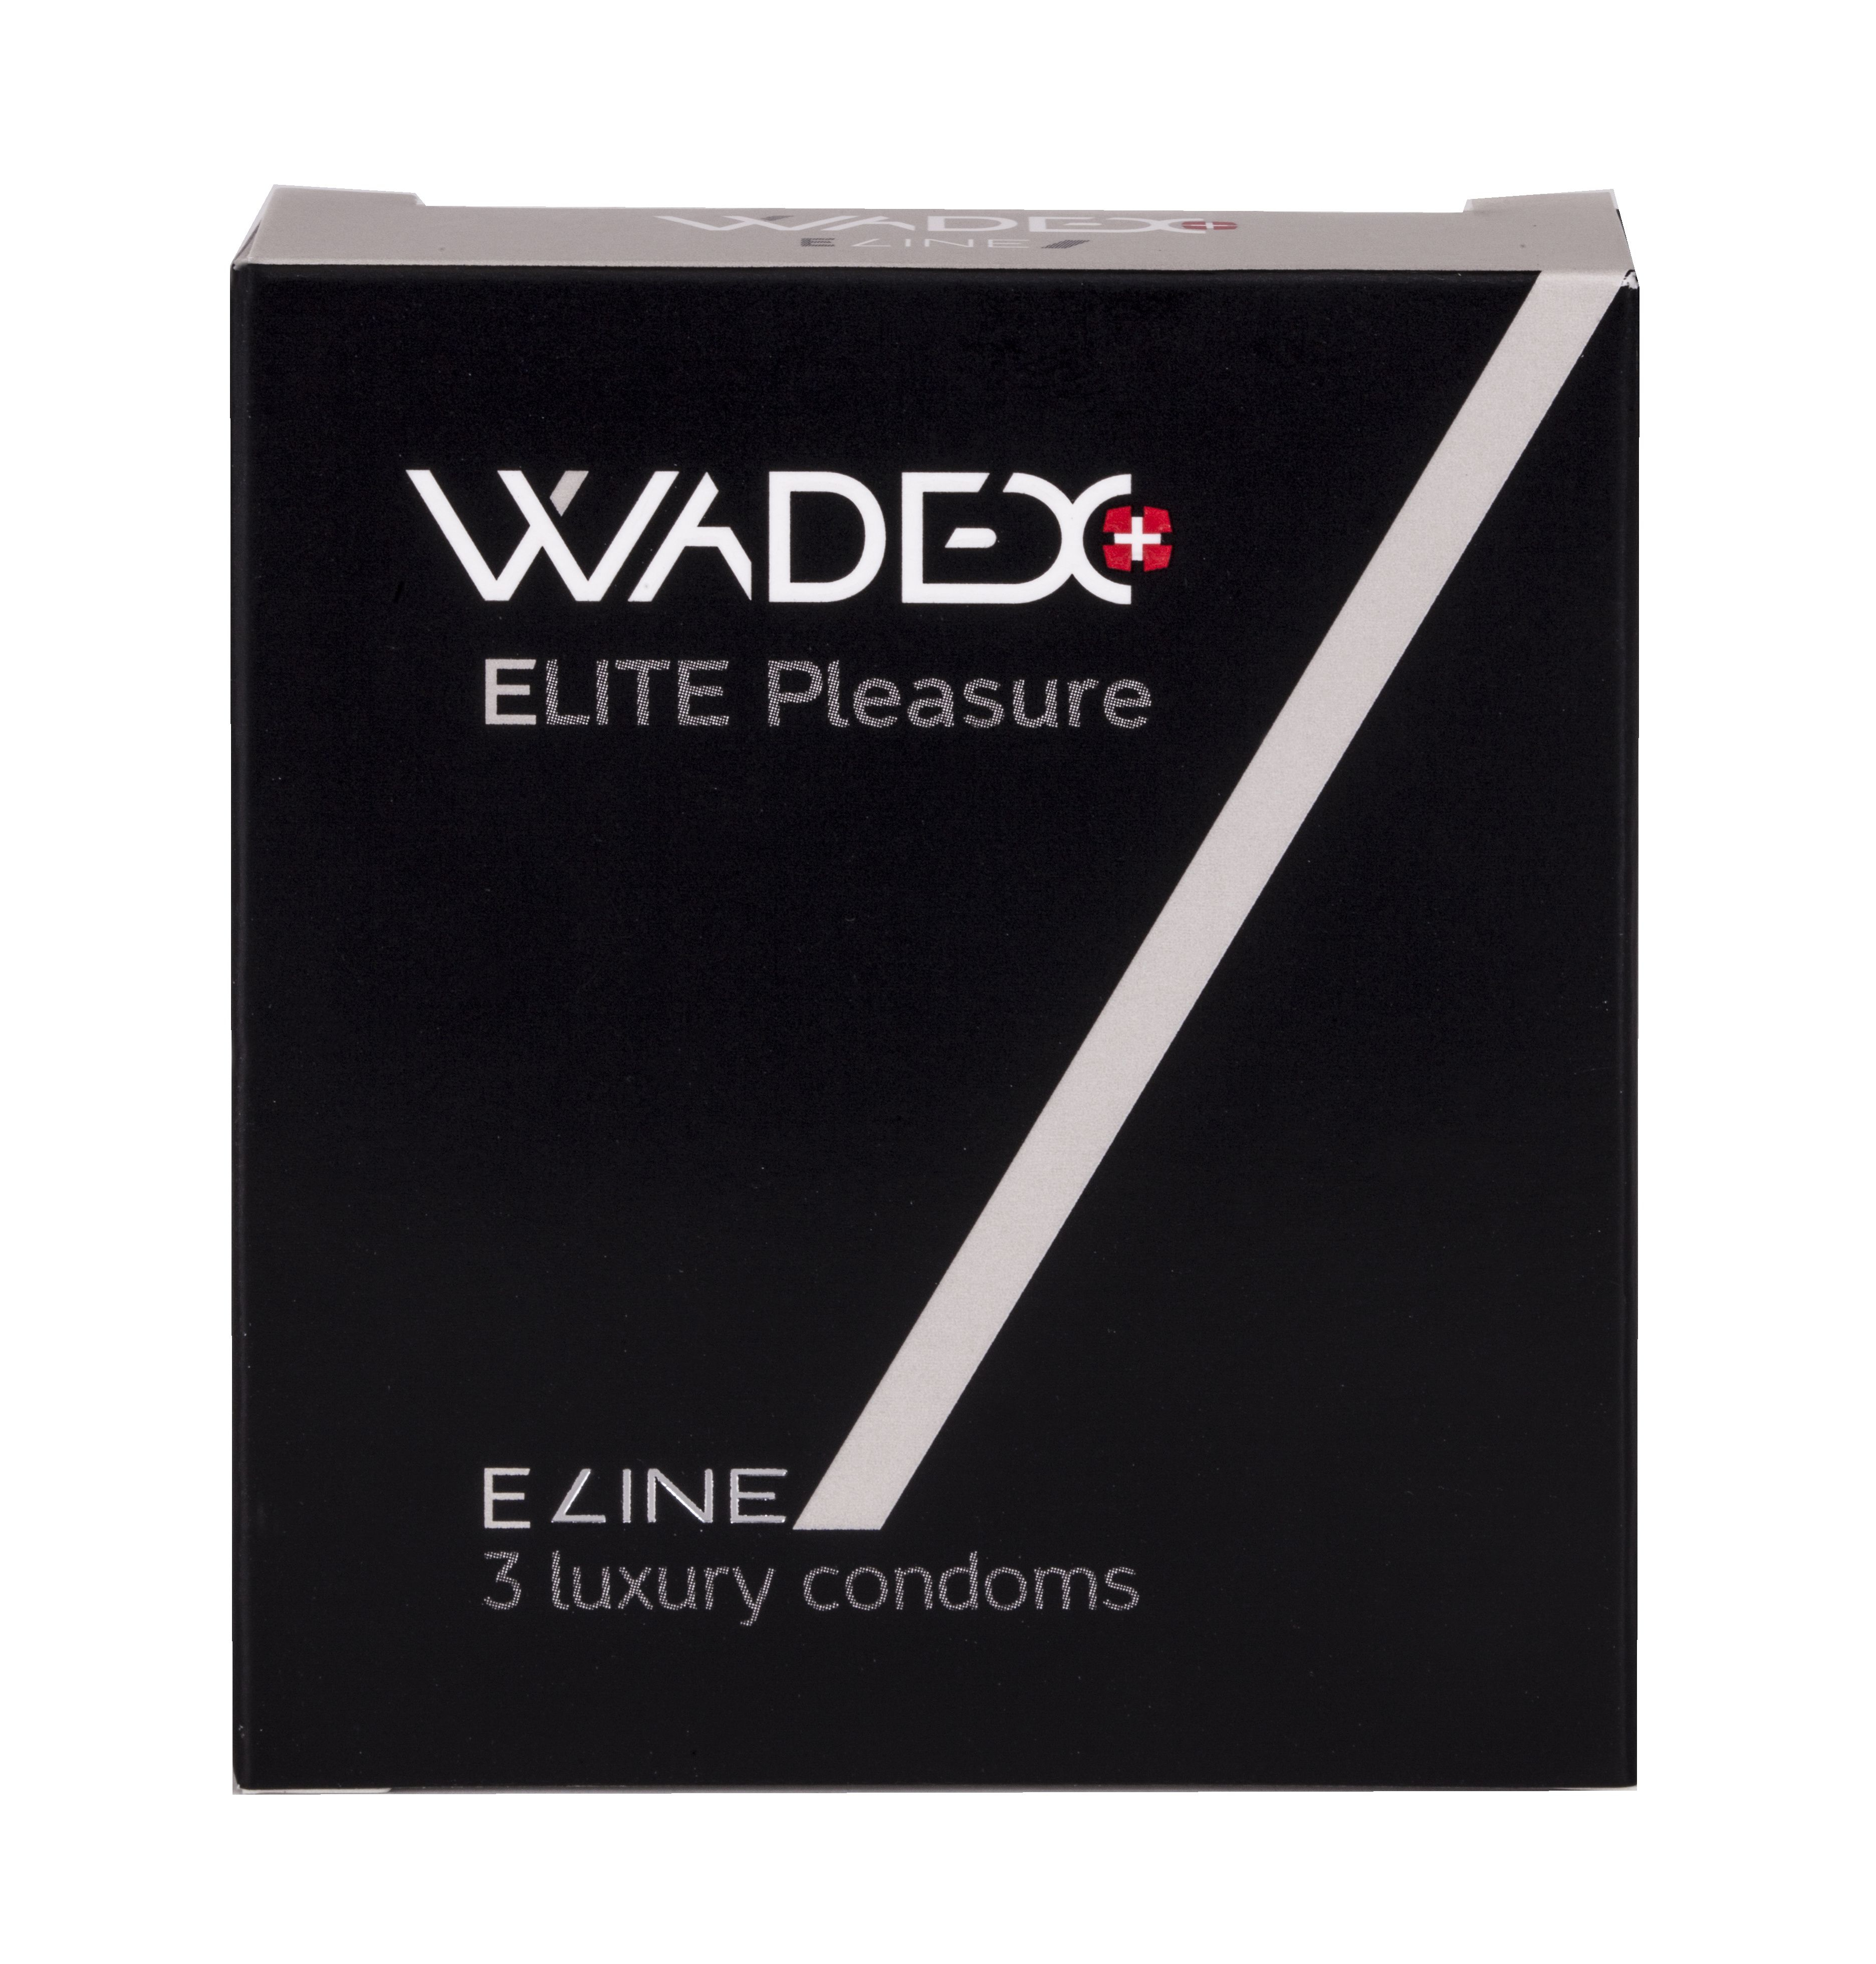 WADEX Elite Pleasure kondomy 3 ks WADEX